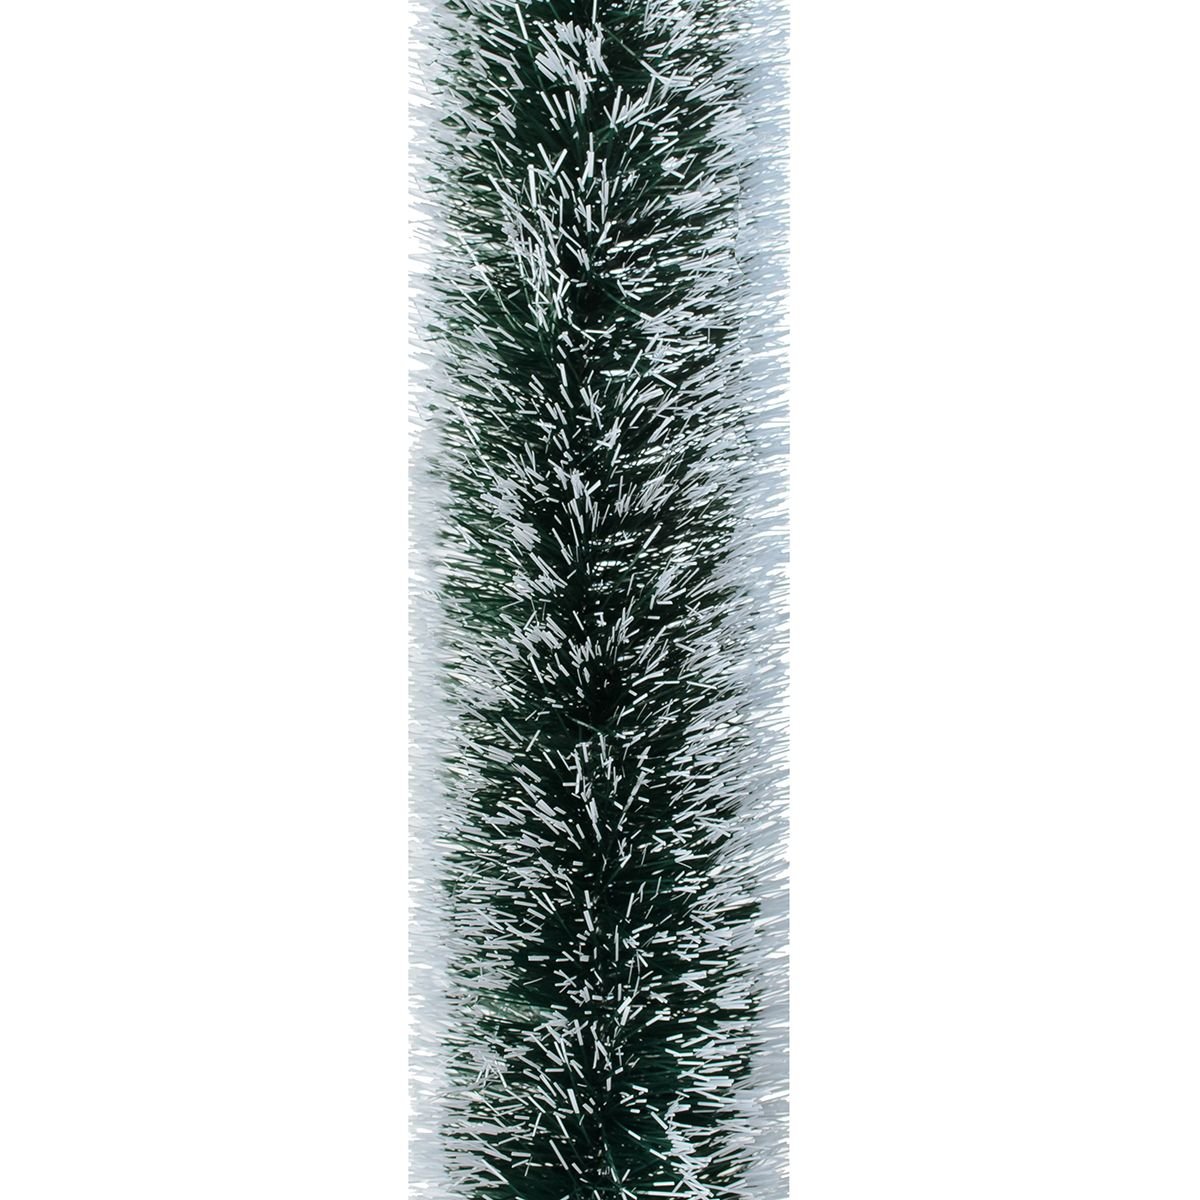 Мишура Novogod'ko 10 см 3 м зеленая с белыми кончиками (980324) - фото 1